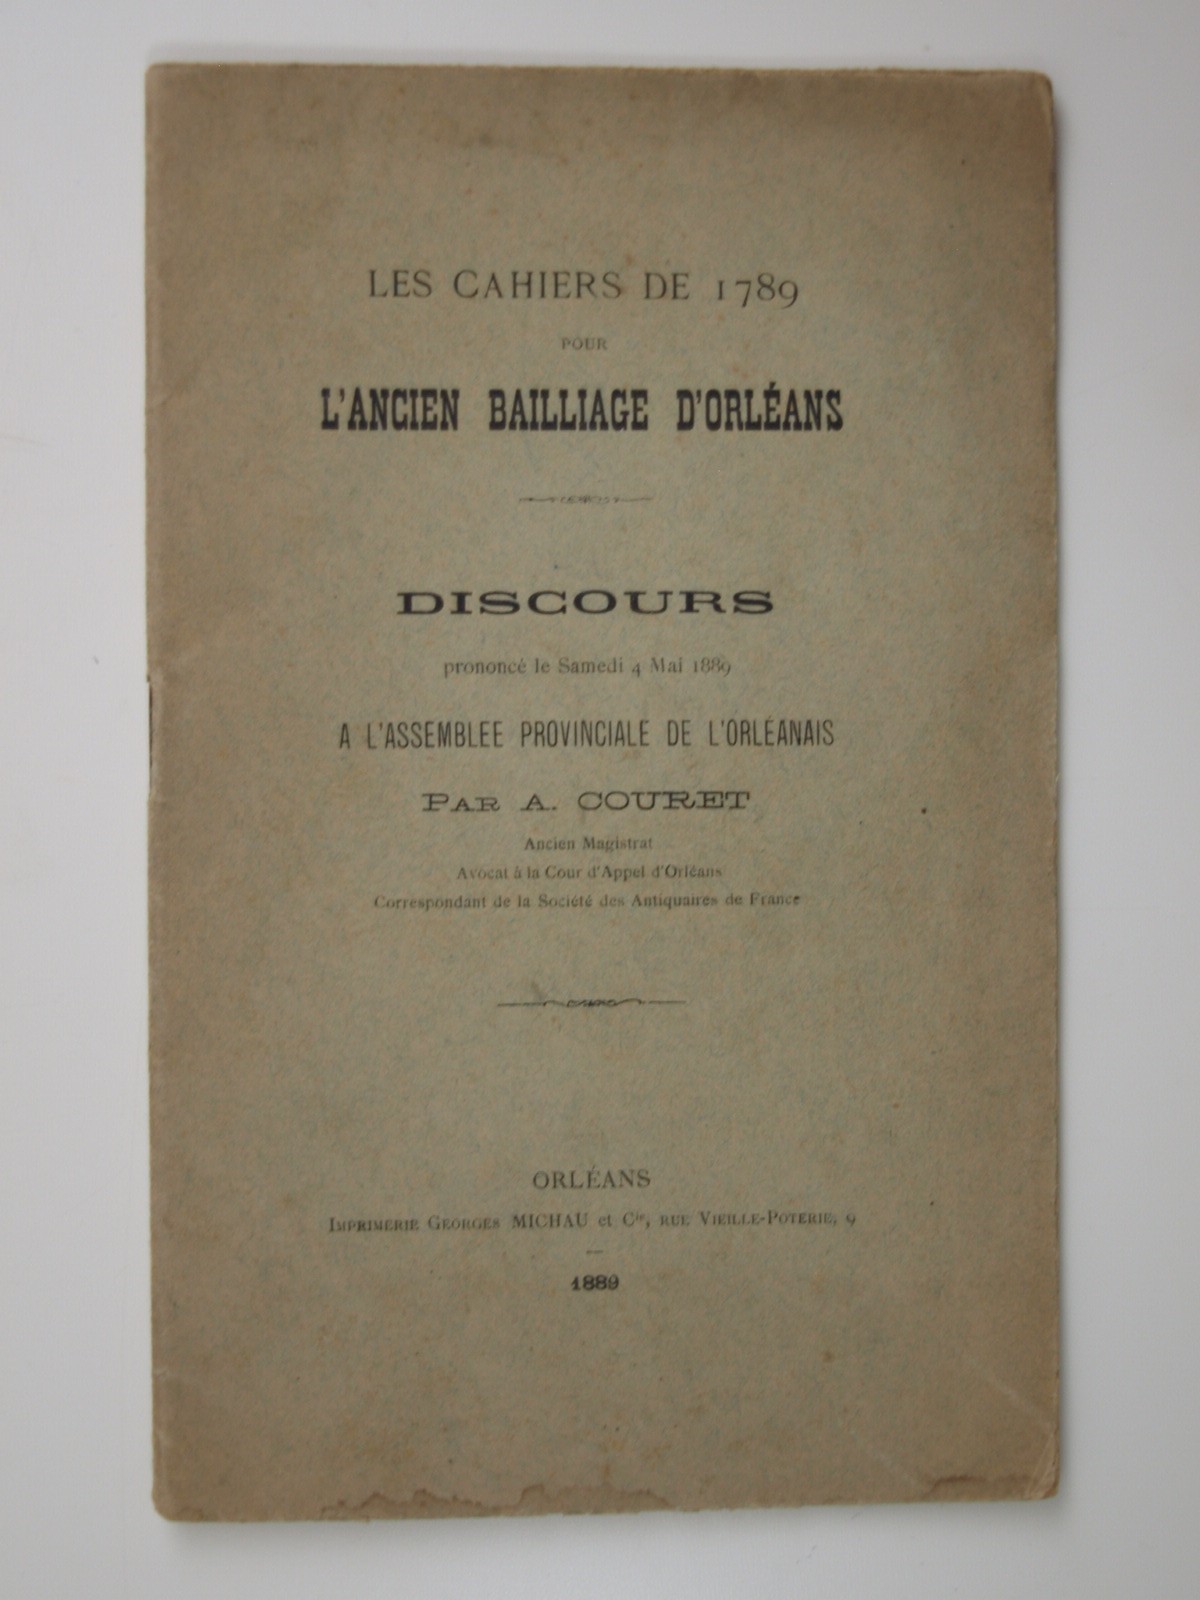 Couret A. : Les cahiers de 1789 pour l'ancien bailliage d'Orléans